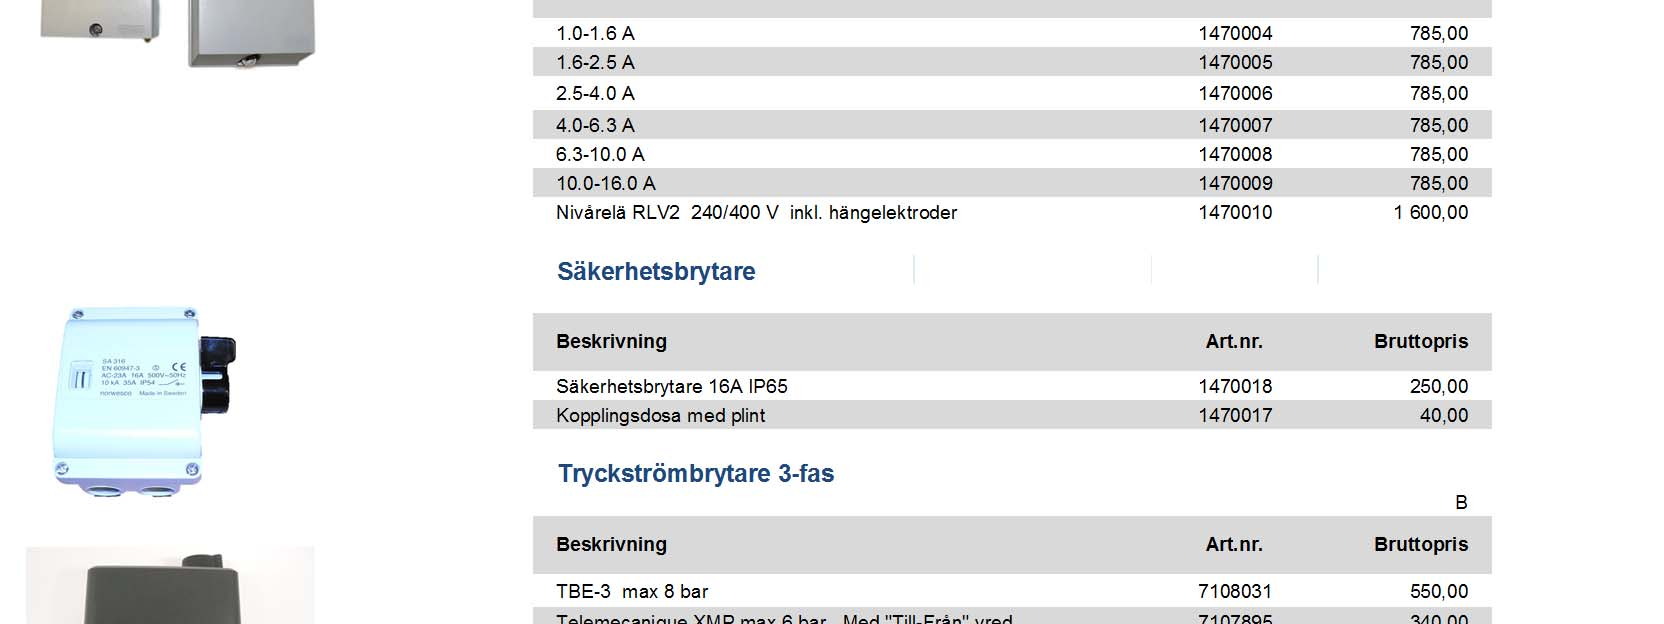 0 A 1470008 785,00 10.0-16.0 A 1470009 785,00 Nivårelä RLV2 240/400 V inkl.